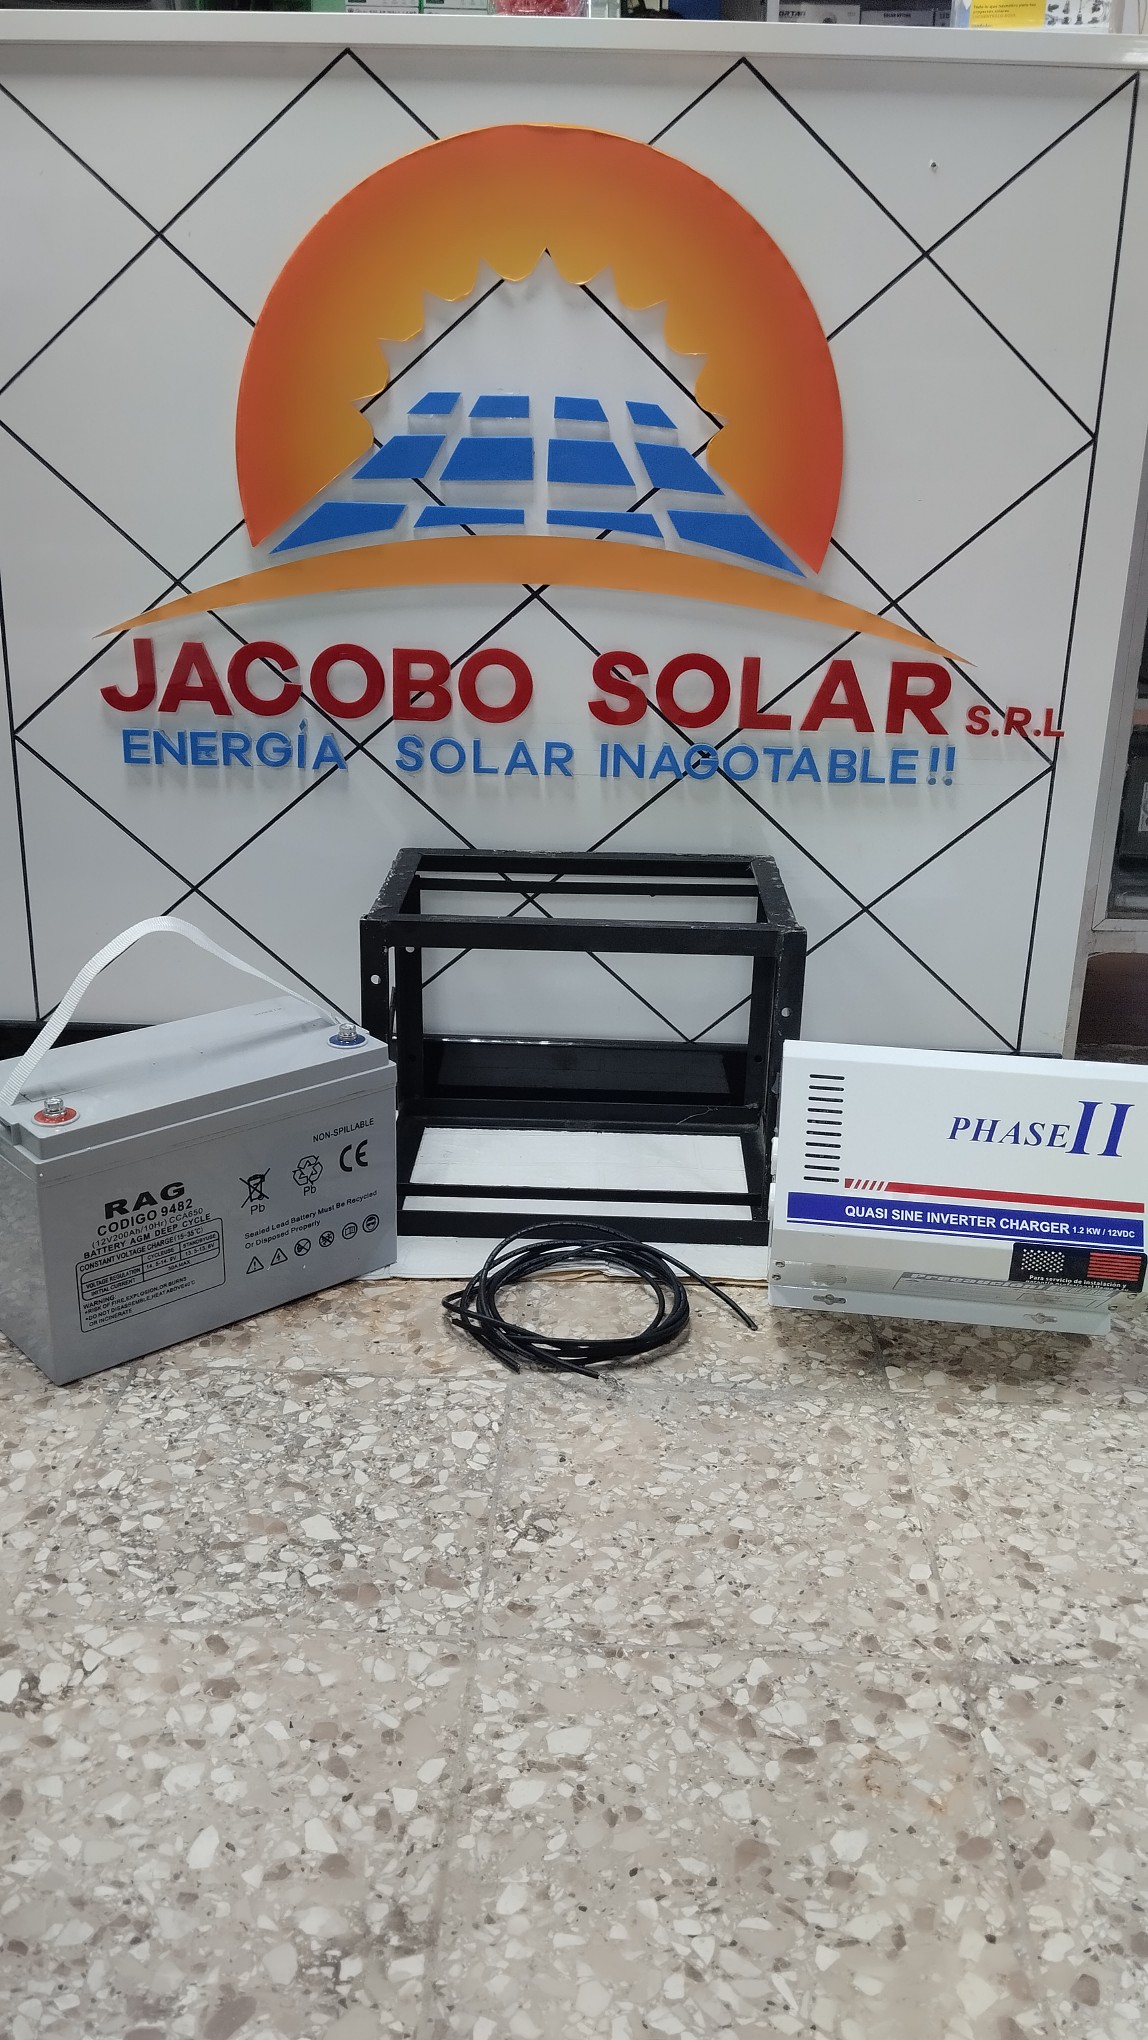 otros electronicos - Jacobo solar está madres con oferta de inversor con sus baterías y sus accesorio 1